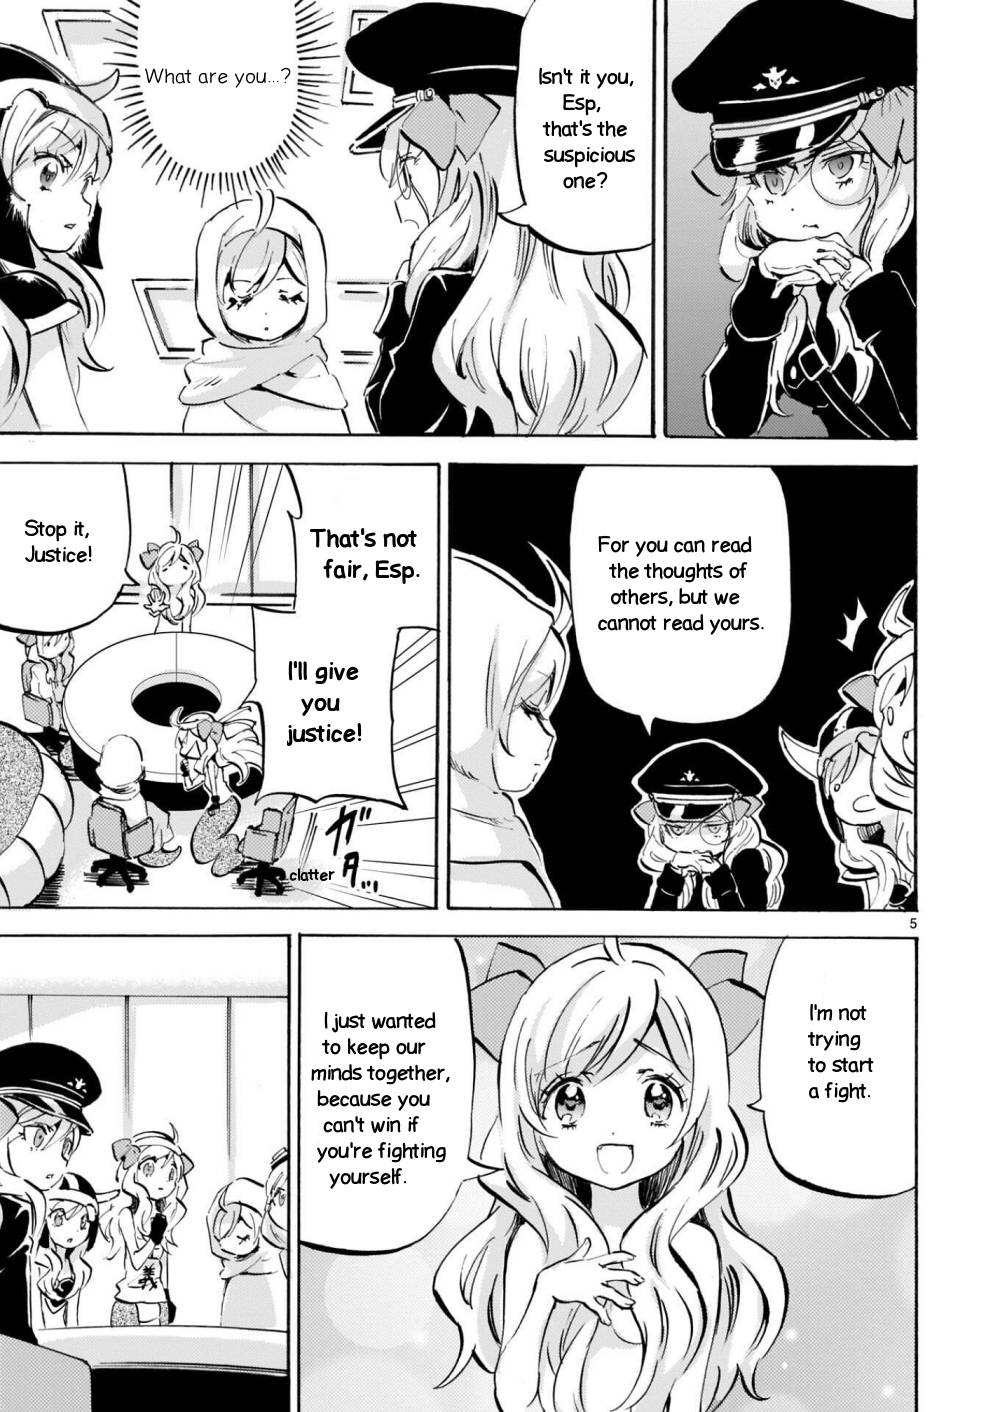 Jashin-chan Dropkick chapter 174 page 5